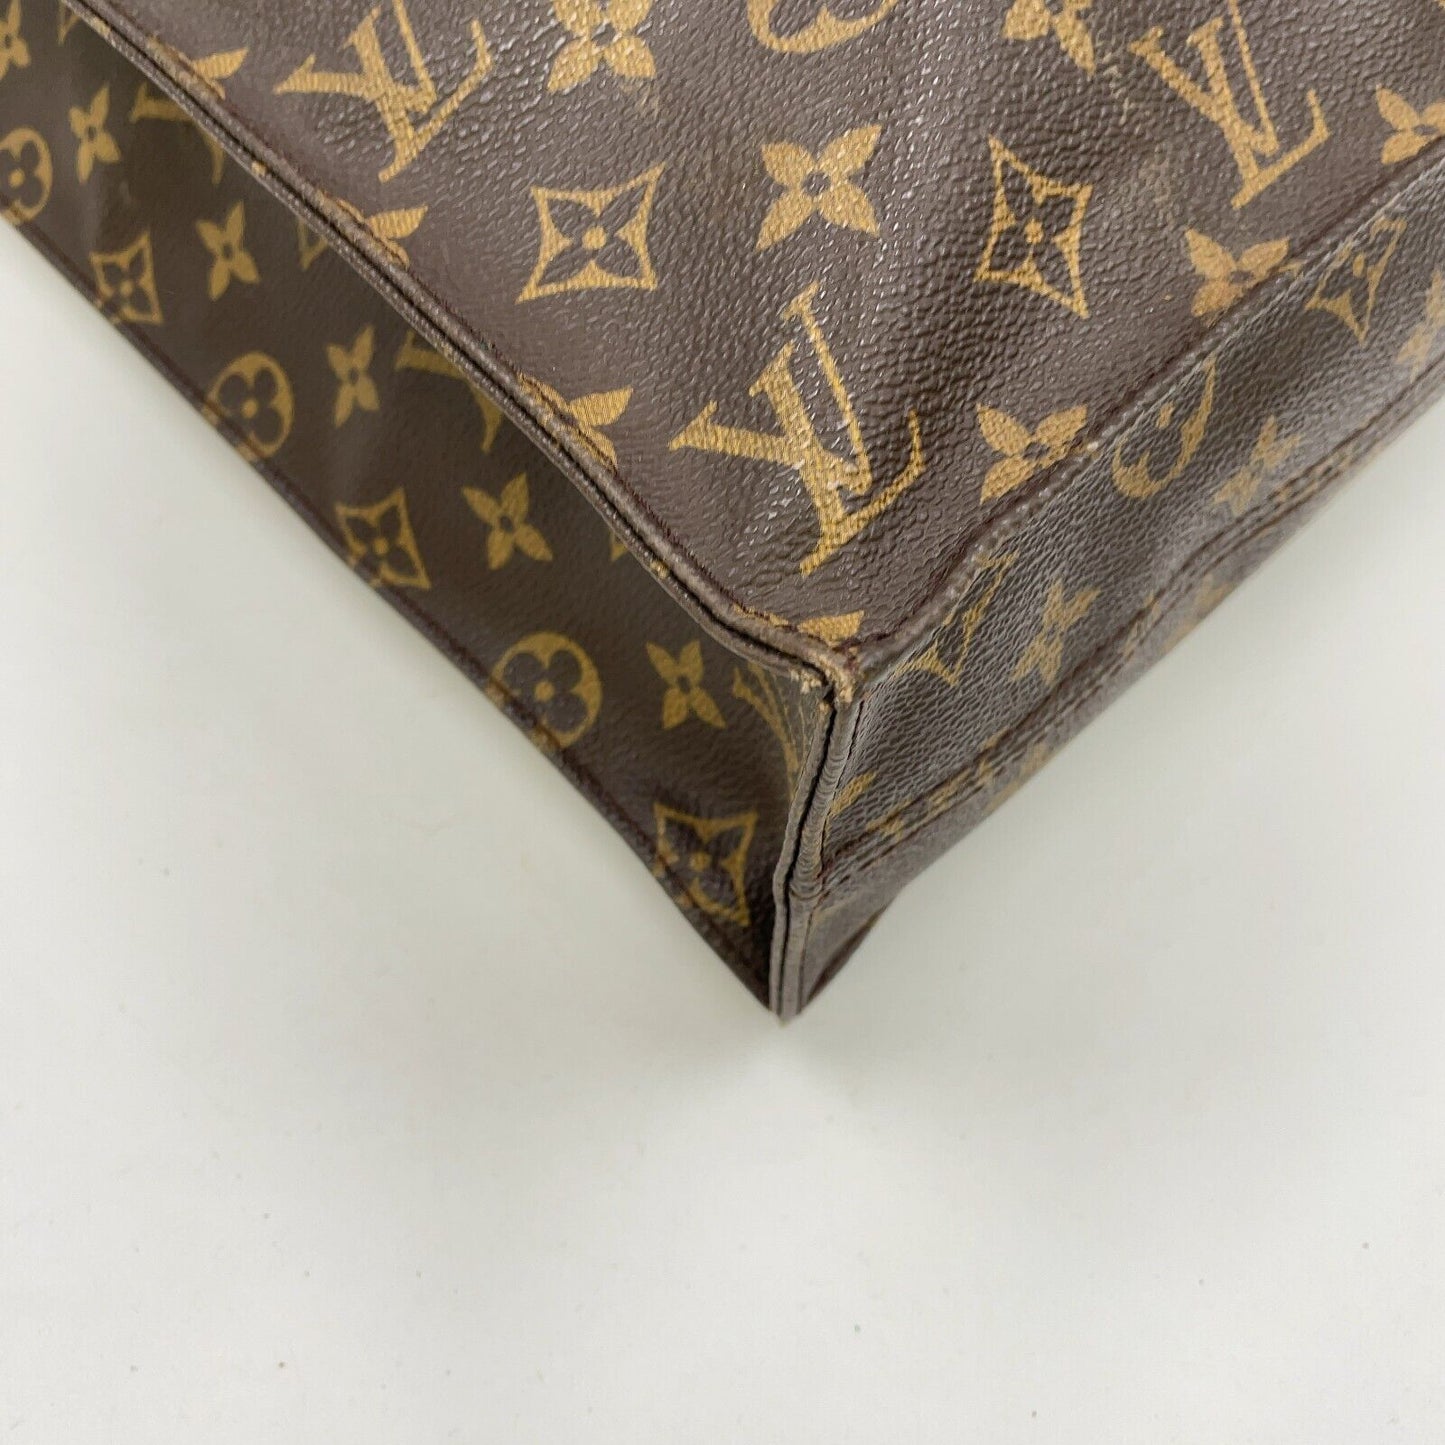 Original/Auth Louis Vuitton - Sac Plat Handtasche - Klassisch - Monogramm